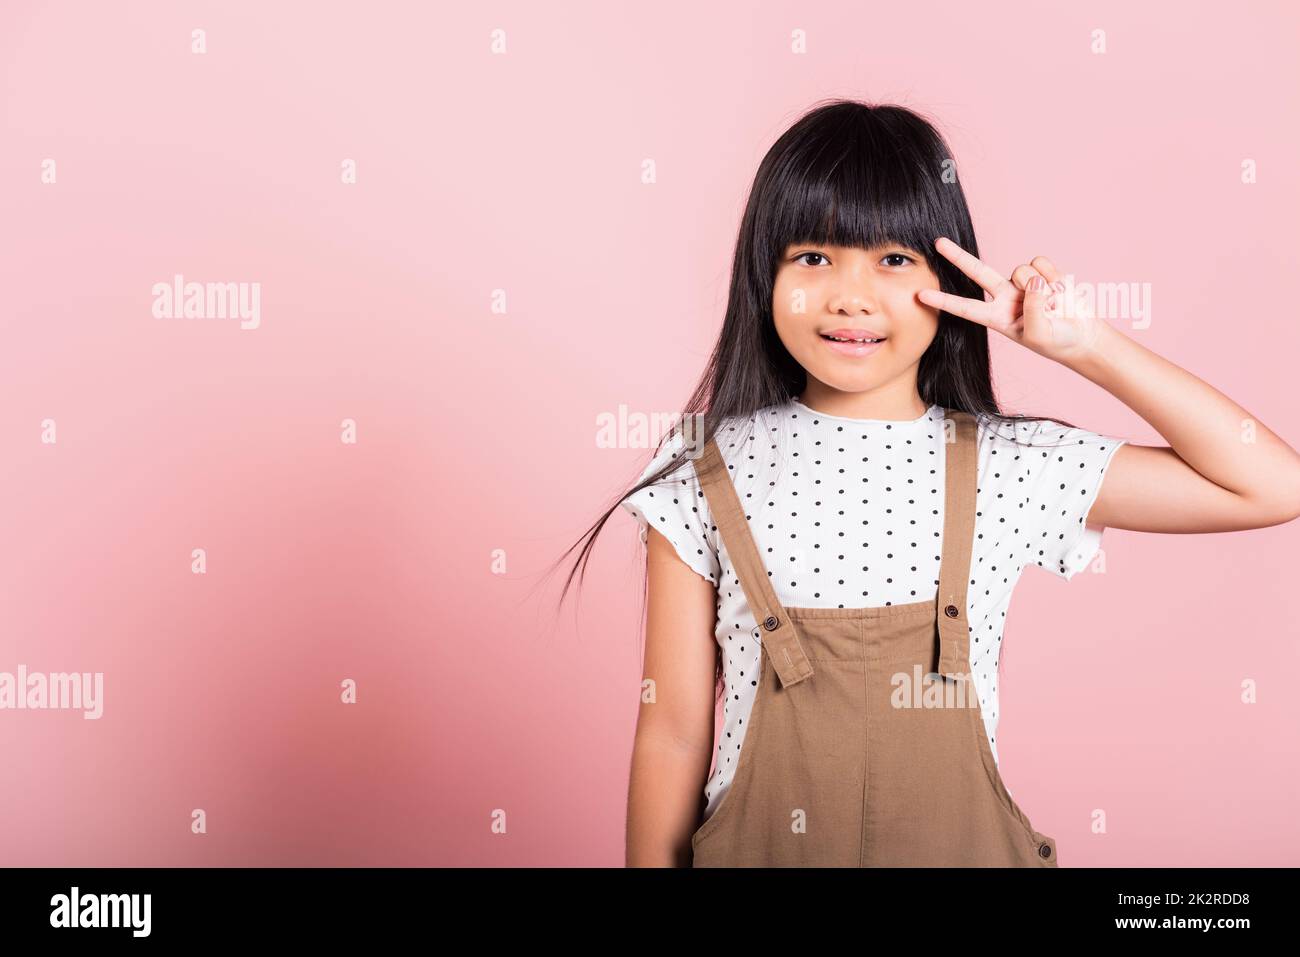 Asiatisches kleines Kind 10 Jahre alt zeigt V-Zeichen-Finger-Geste Stockfoto